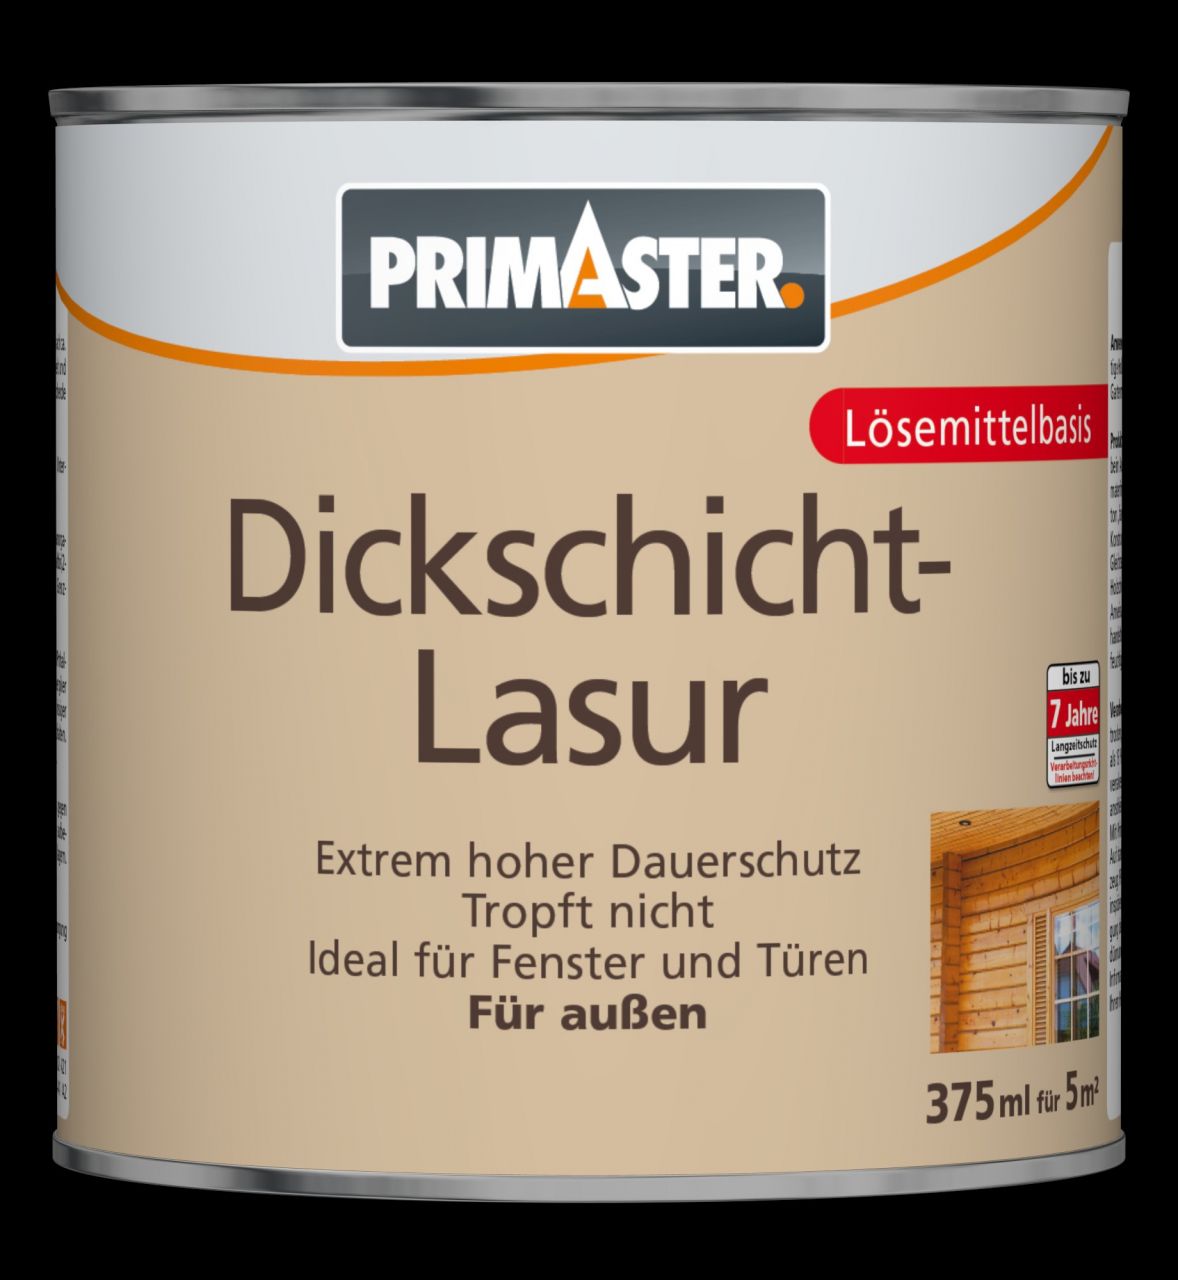 Primaster Dickschichtlasur 375 ml eiche GLO765153171